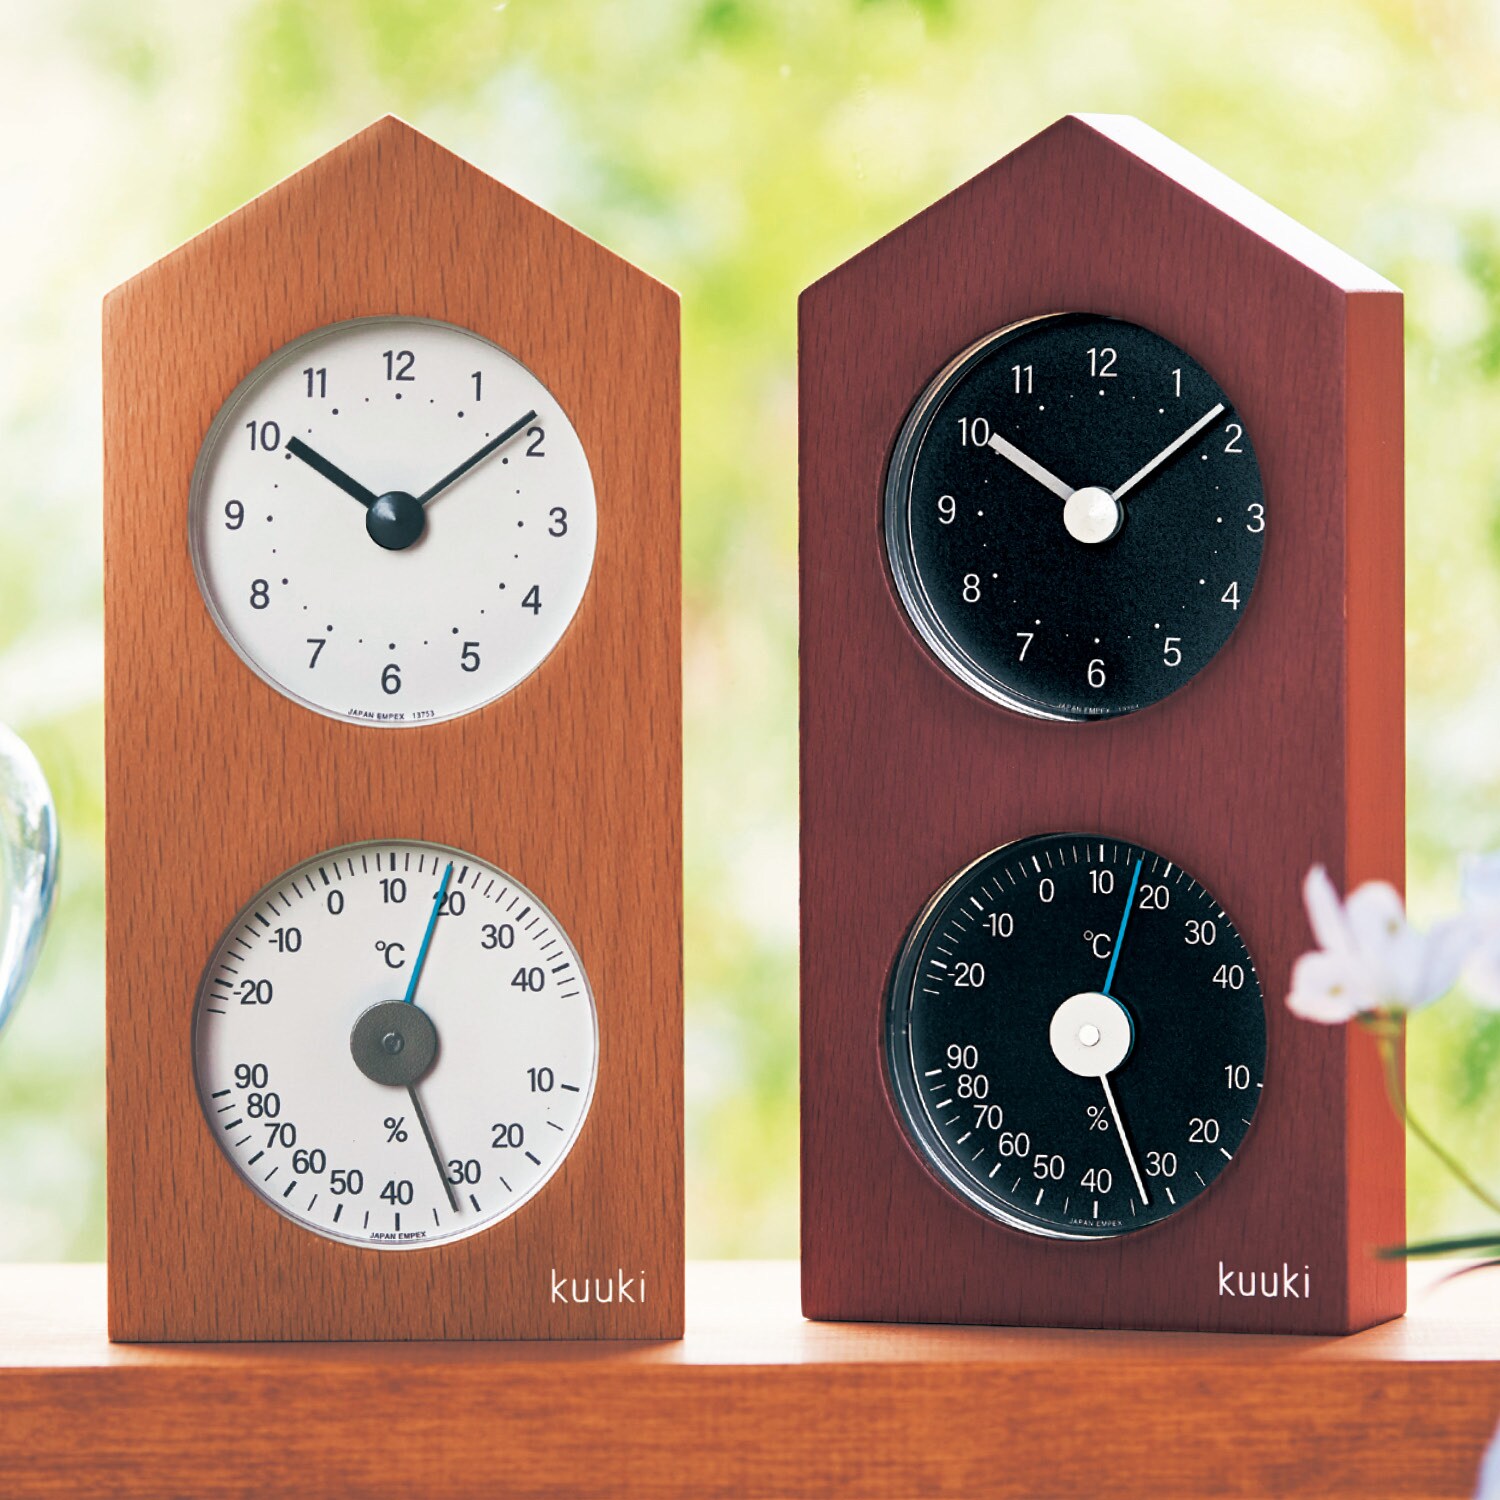 【ベルメゾン】卓上サイズの木製の時計 & 温湿度計[日本製]